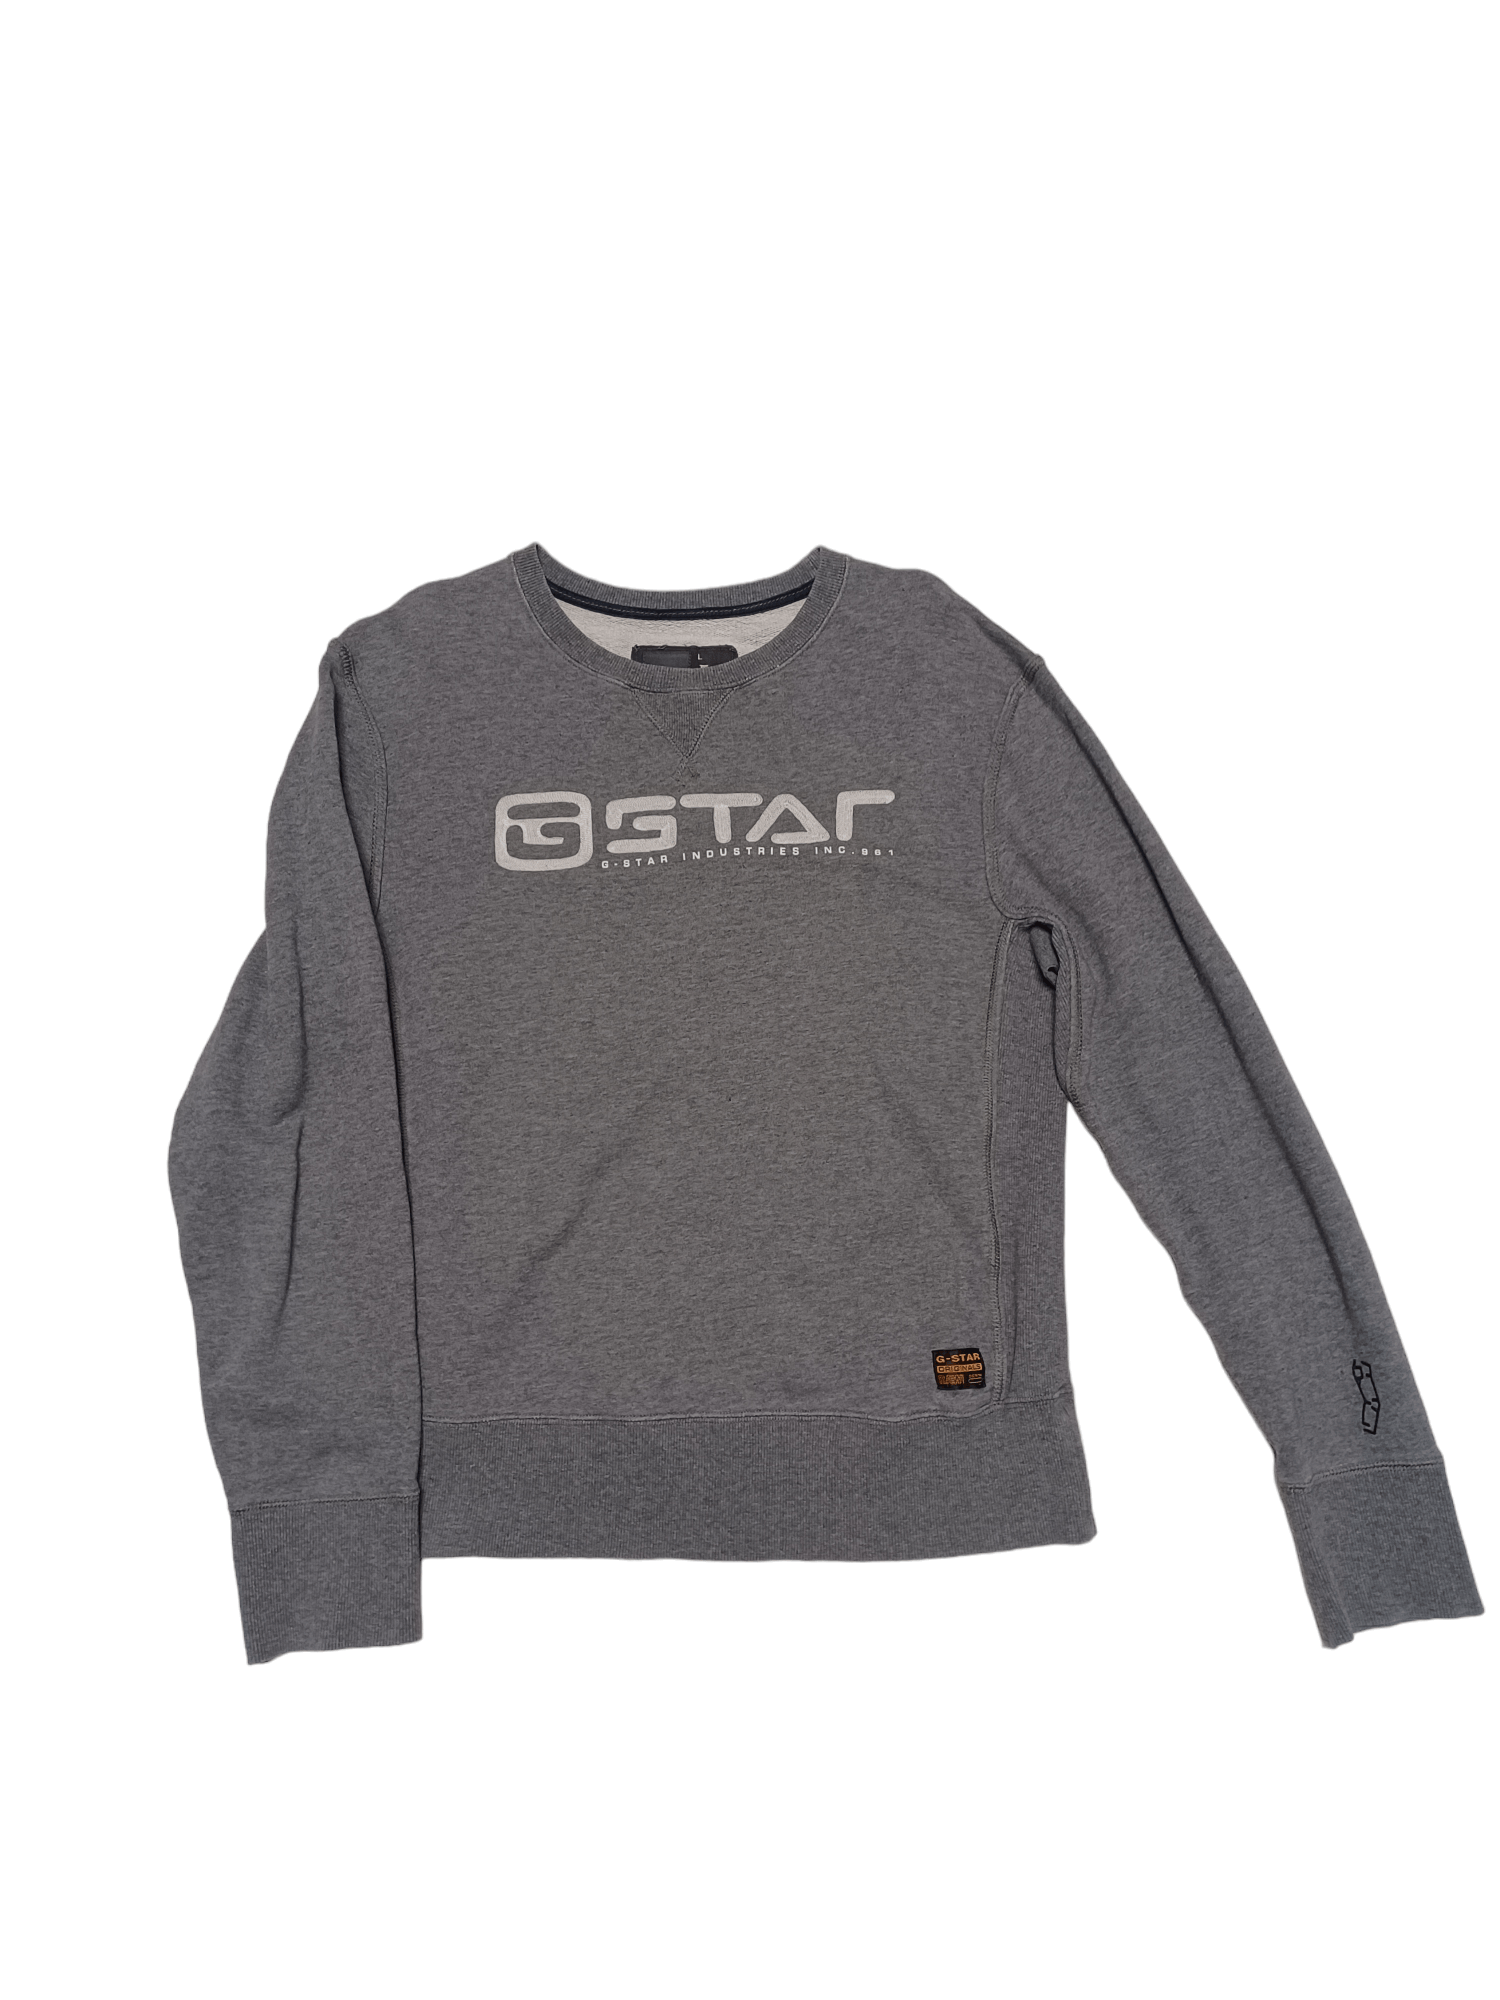 Pre-owned G Star Raw X Gstar G Star Raw Big Embroidered Logo Sweatshirt In Grey